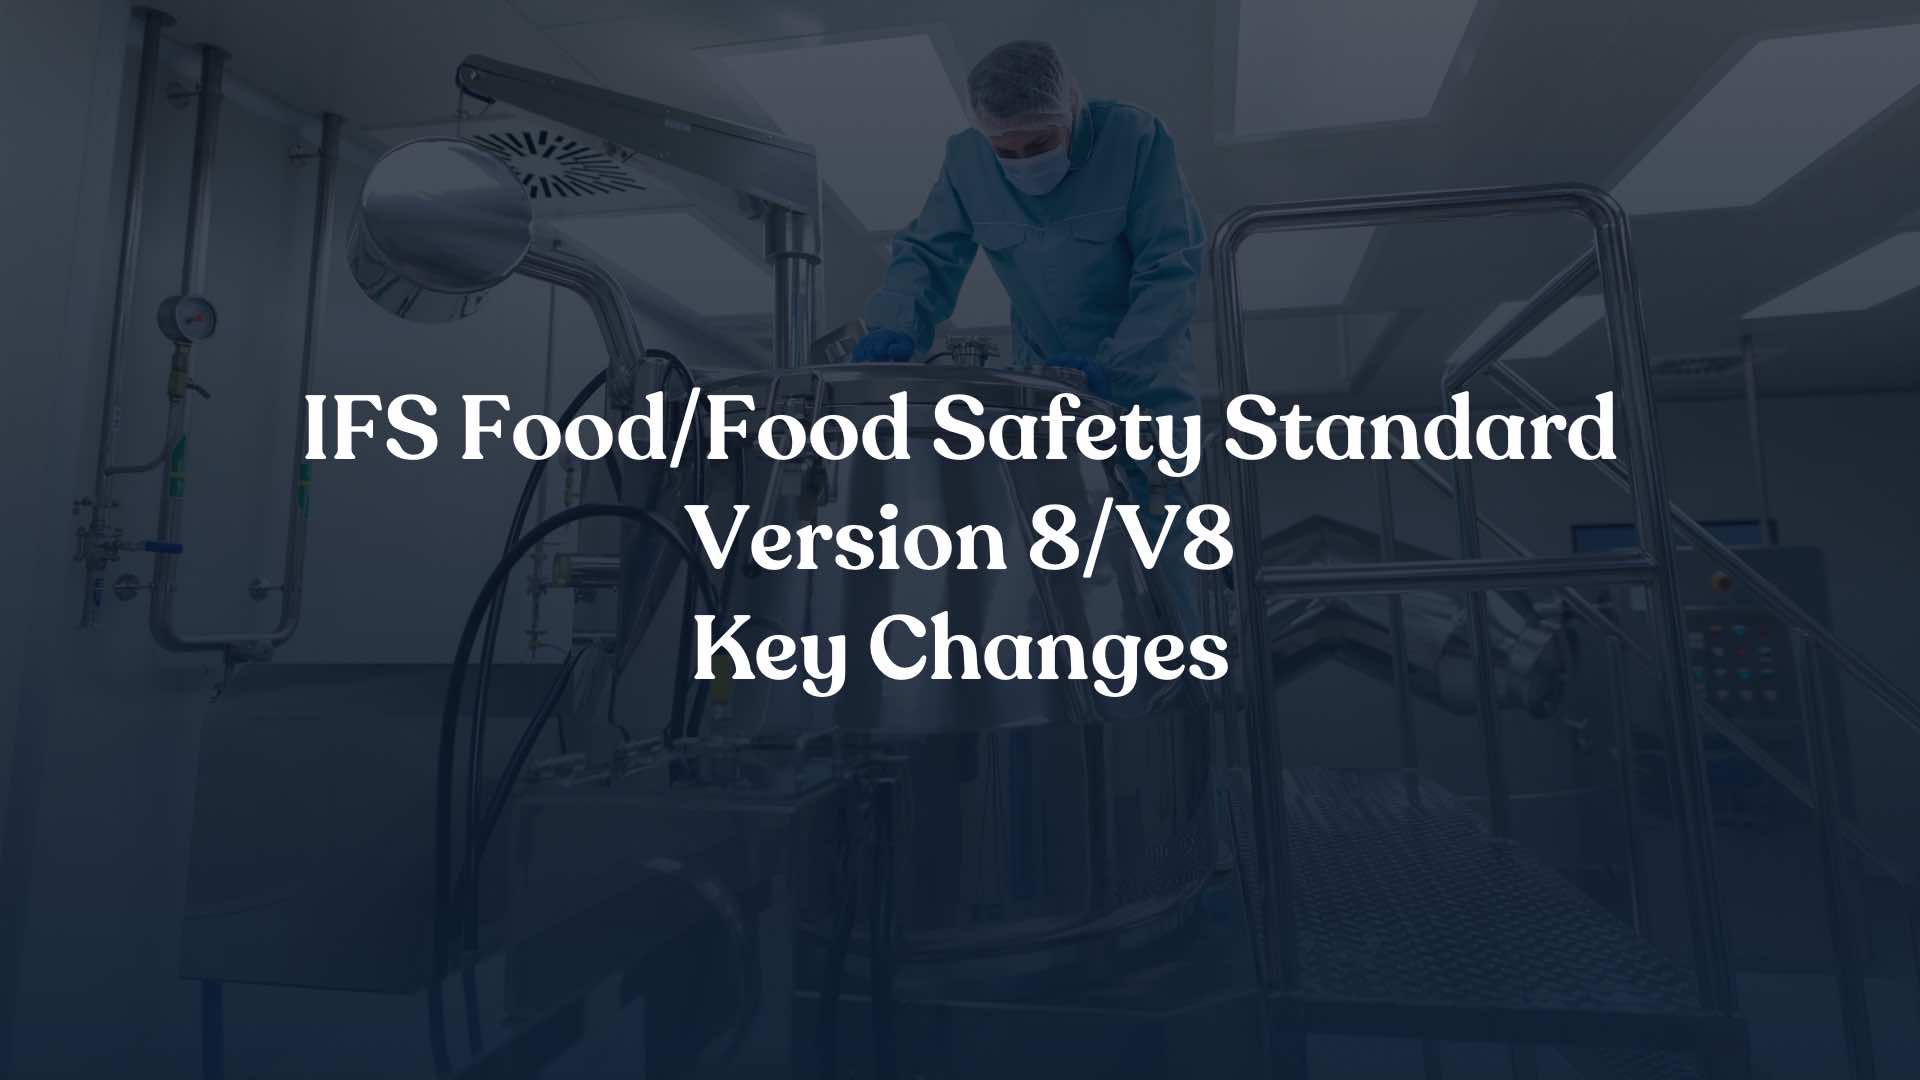 IFS Food/Food Safety Standard Version 8/V8 Key Changes